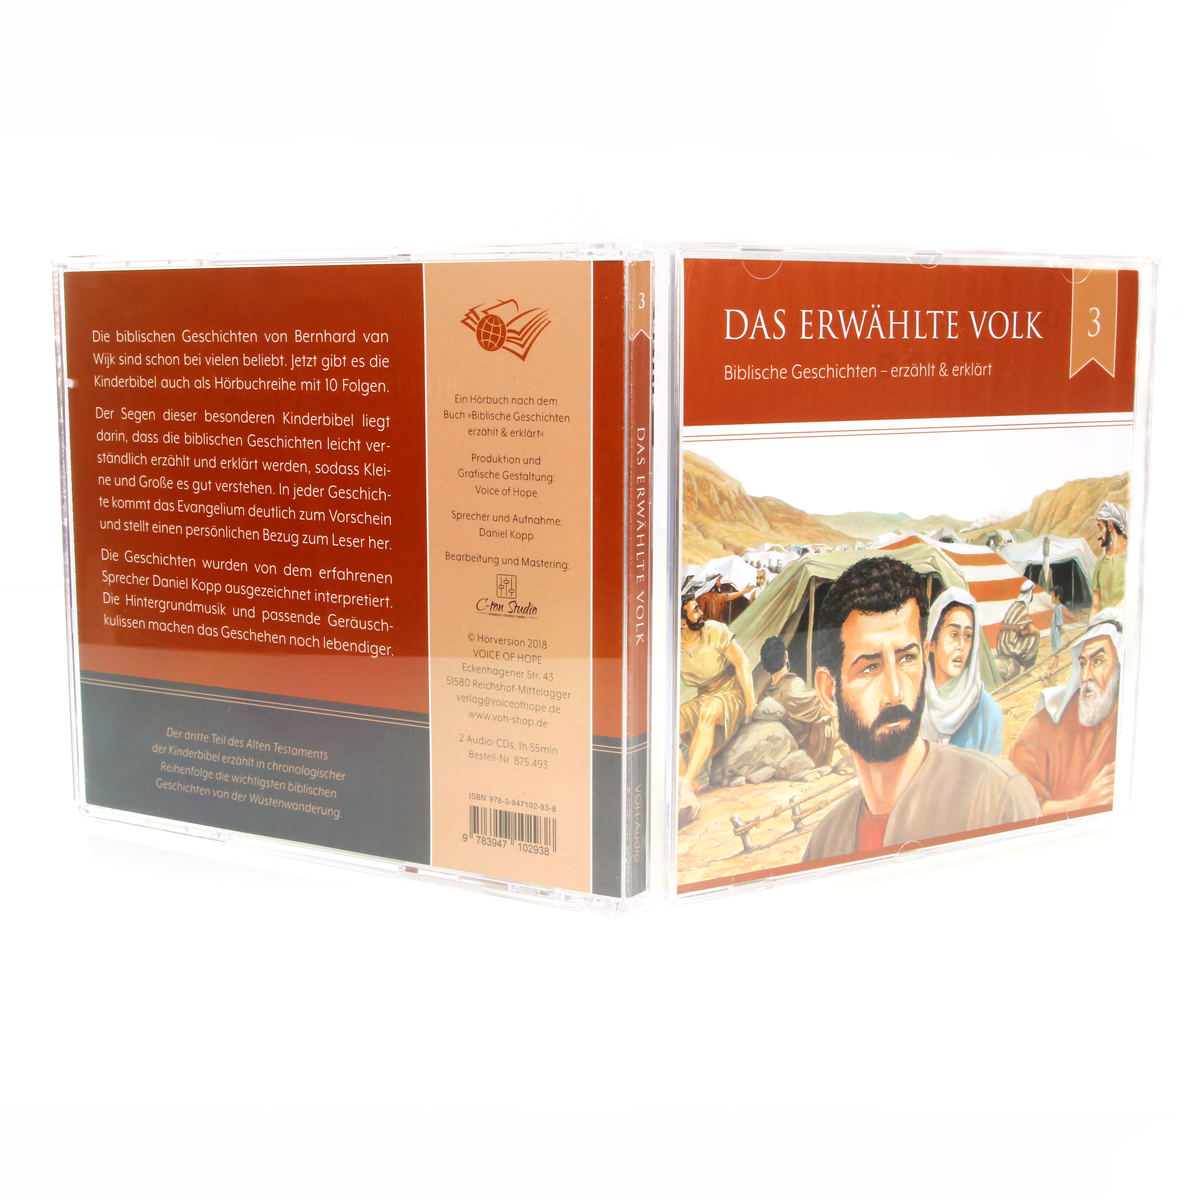 Das erwählte Volk (2 CDs Audio-Hörbuch)